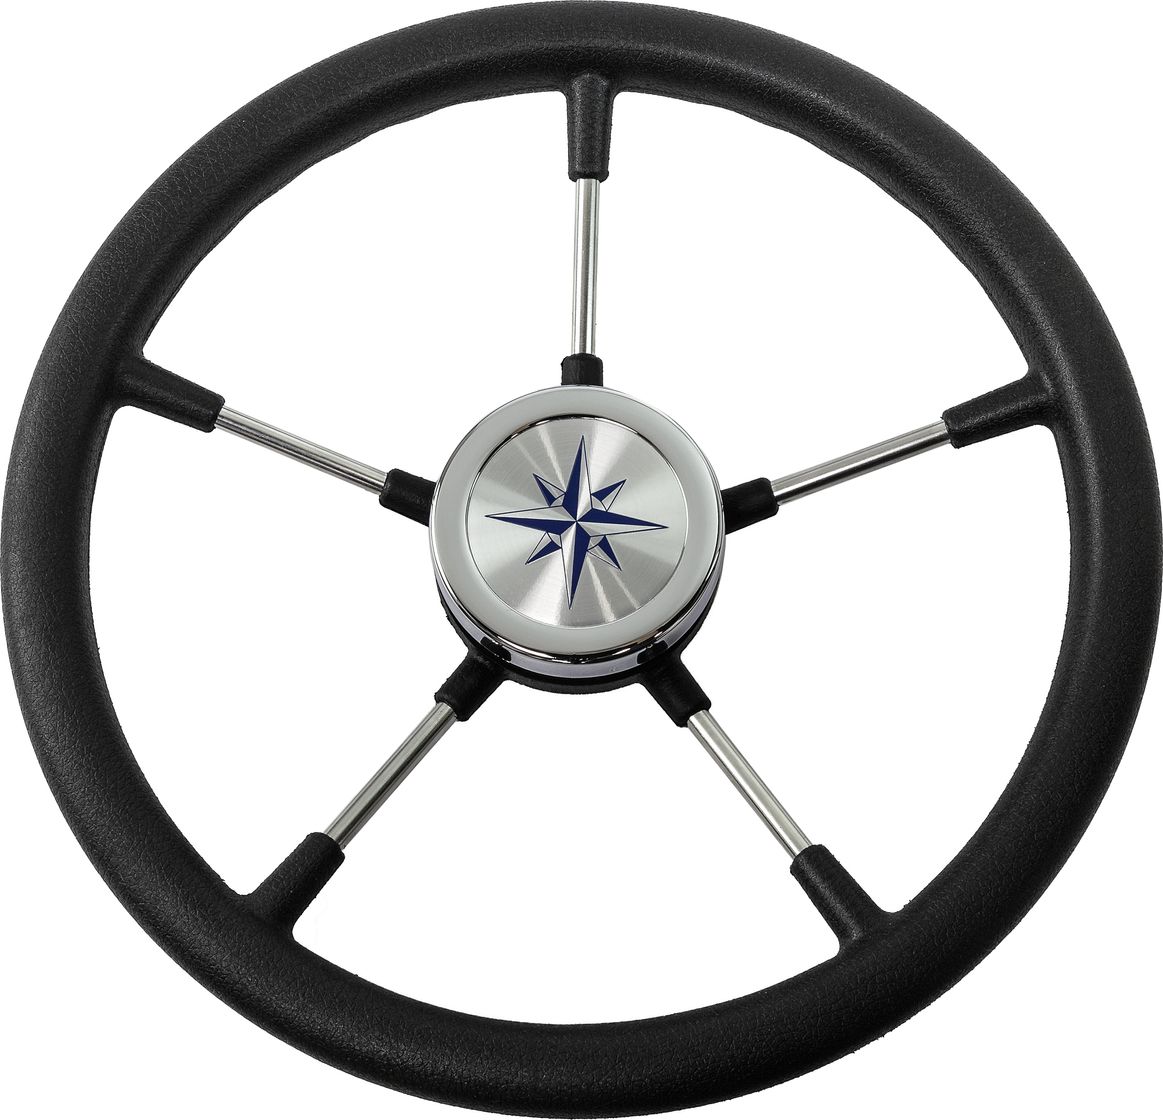 Рулевое колесо RIVA RSL обод черный, спицы серебряные д. 360 мм VN735022-01 рулевое колесо riva rsl обод белый спицы серебряные д 360 мм vn735022 08